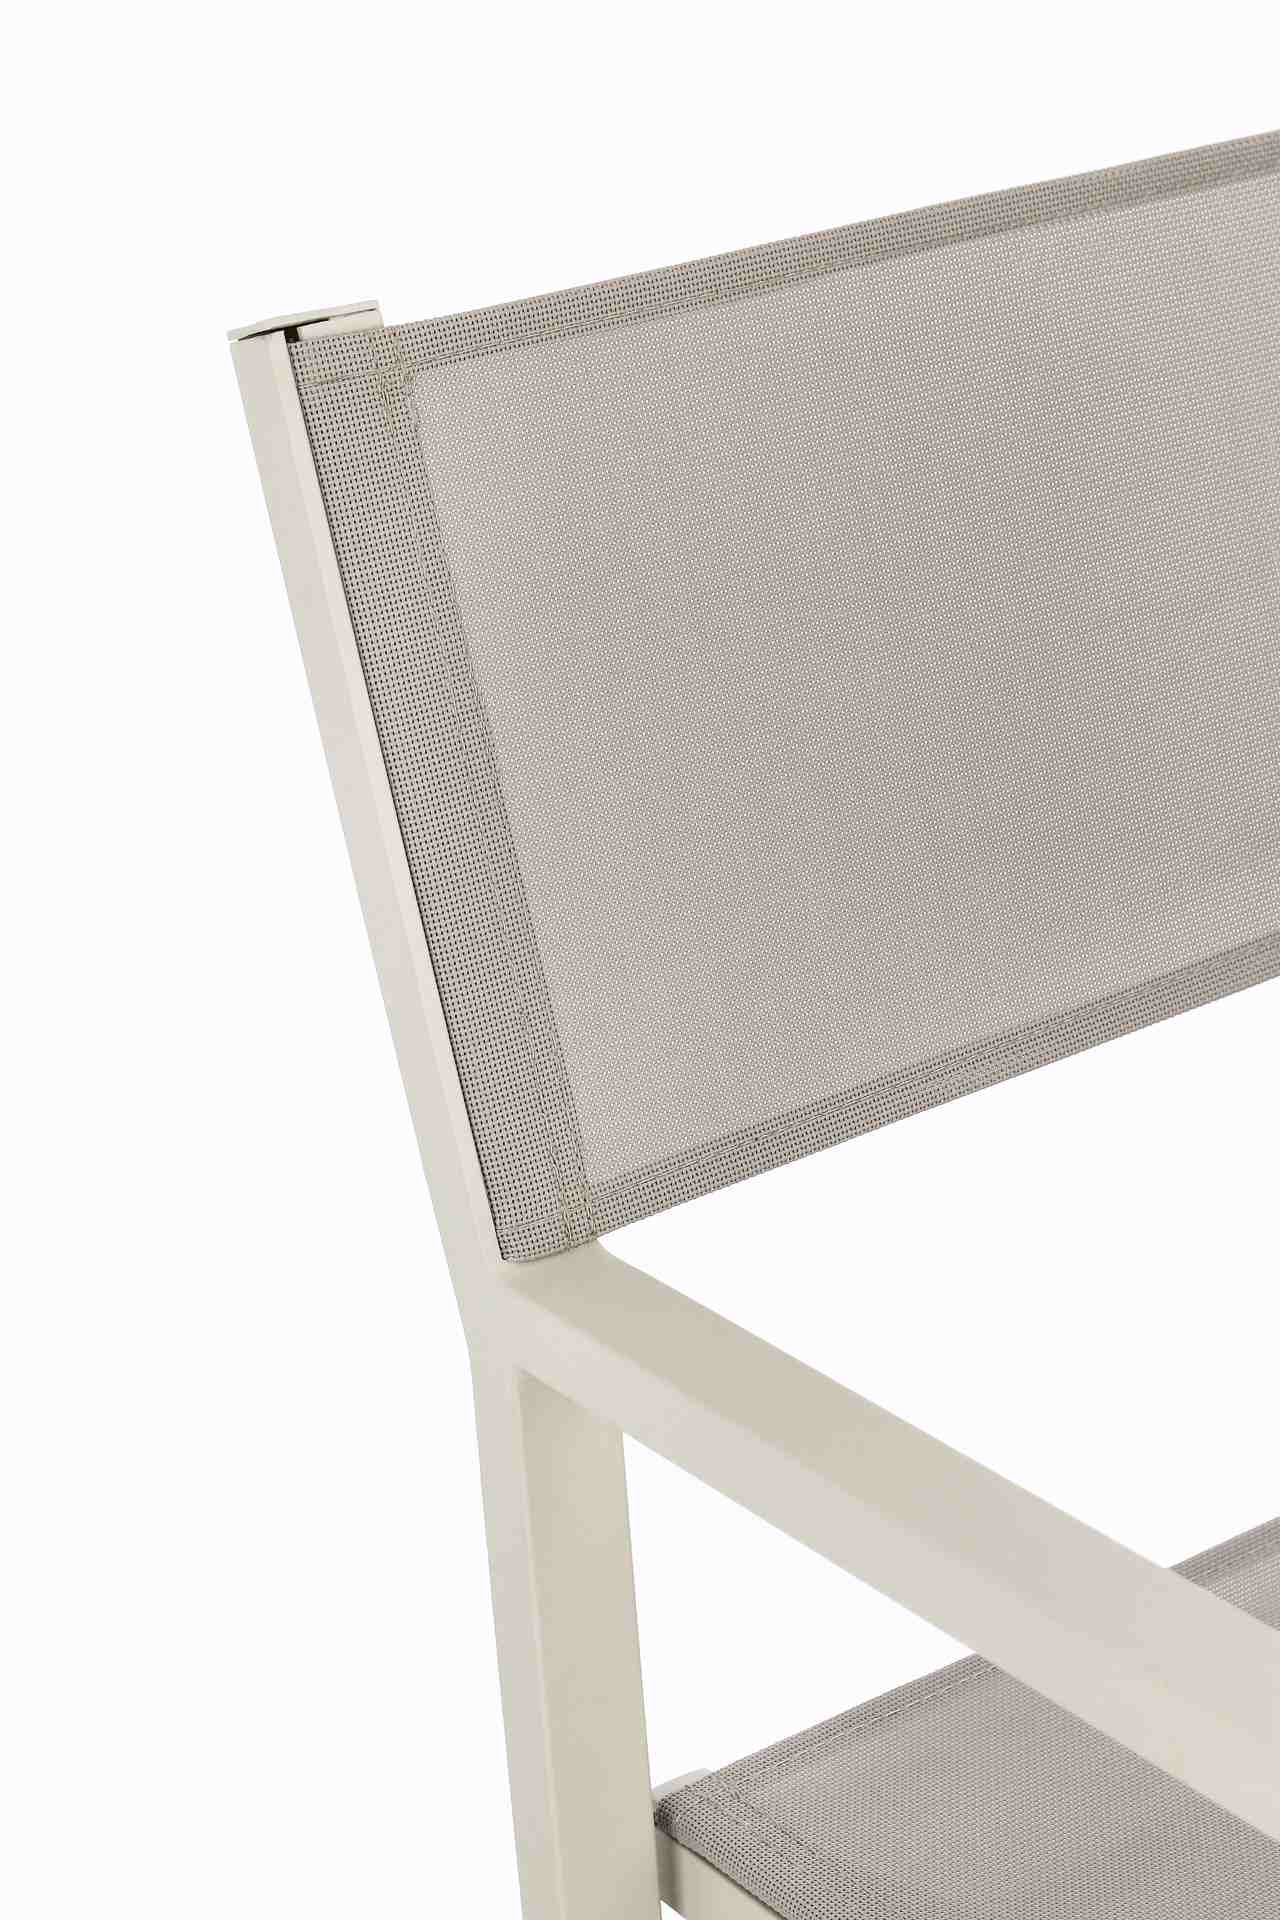 Der Gartenstuhl Konnor überzeugt mit seinem modernen Design. Gefertigt wurde er aus Textilene, welche einen Rastin Farbton besitzt. Das Gestell ist aus Aluminium und hat auch eine Rastin Farbe. Der Stuhl verfügt über eine Sitzhöhe von 46 cm und ist für de